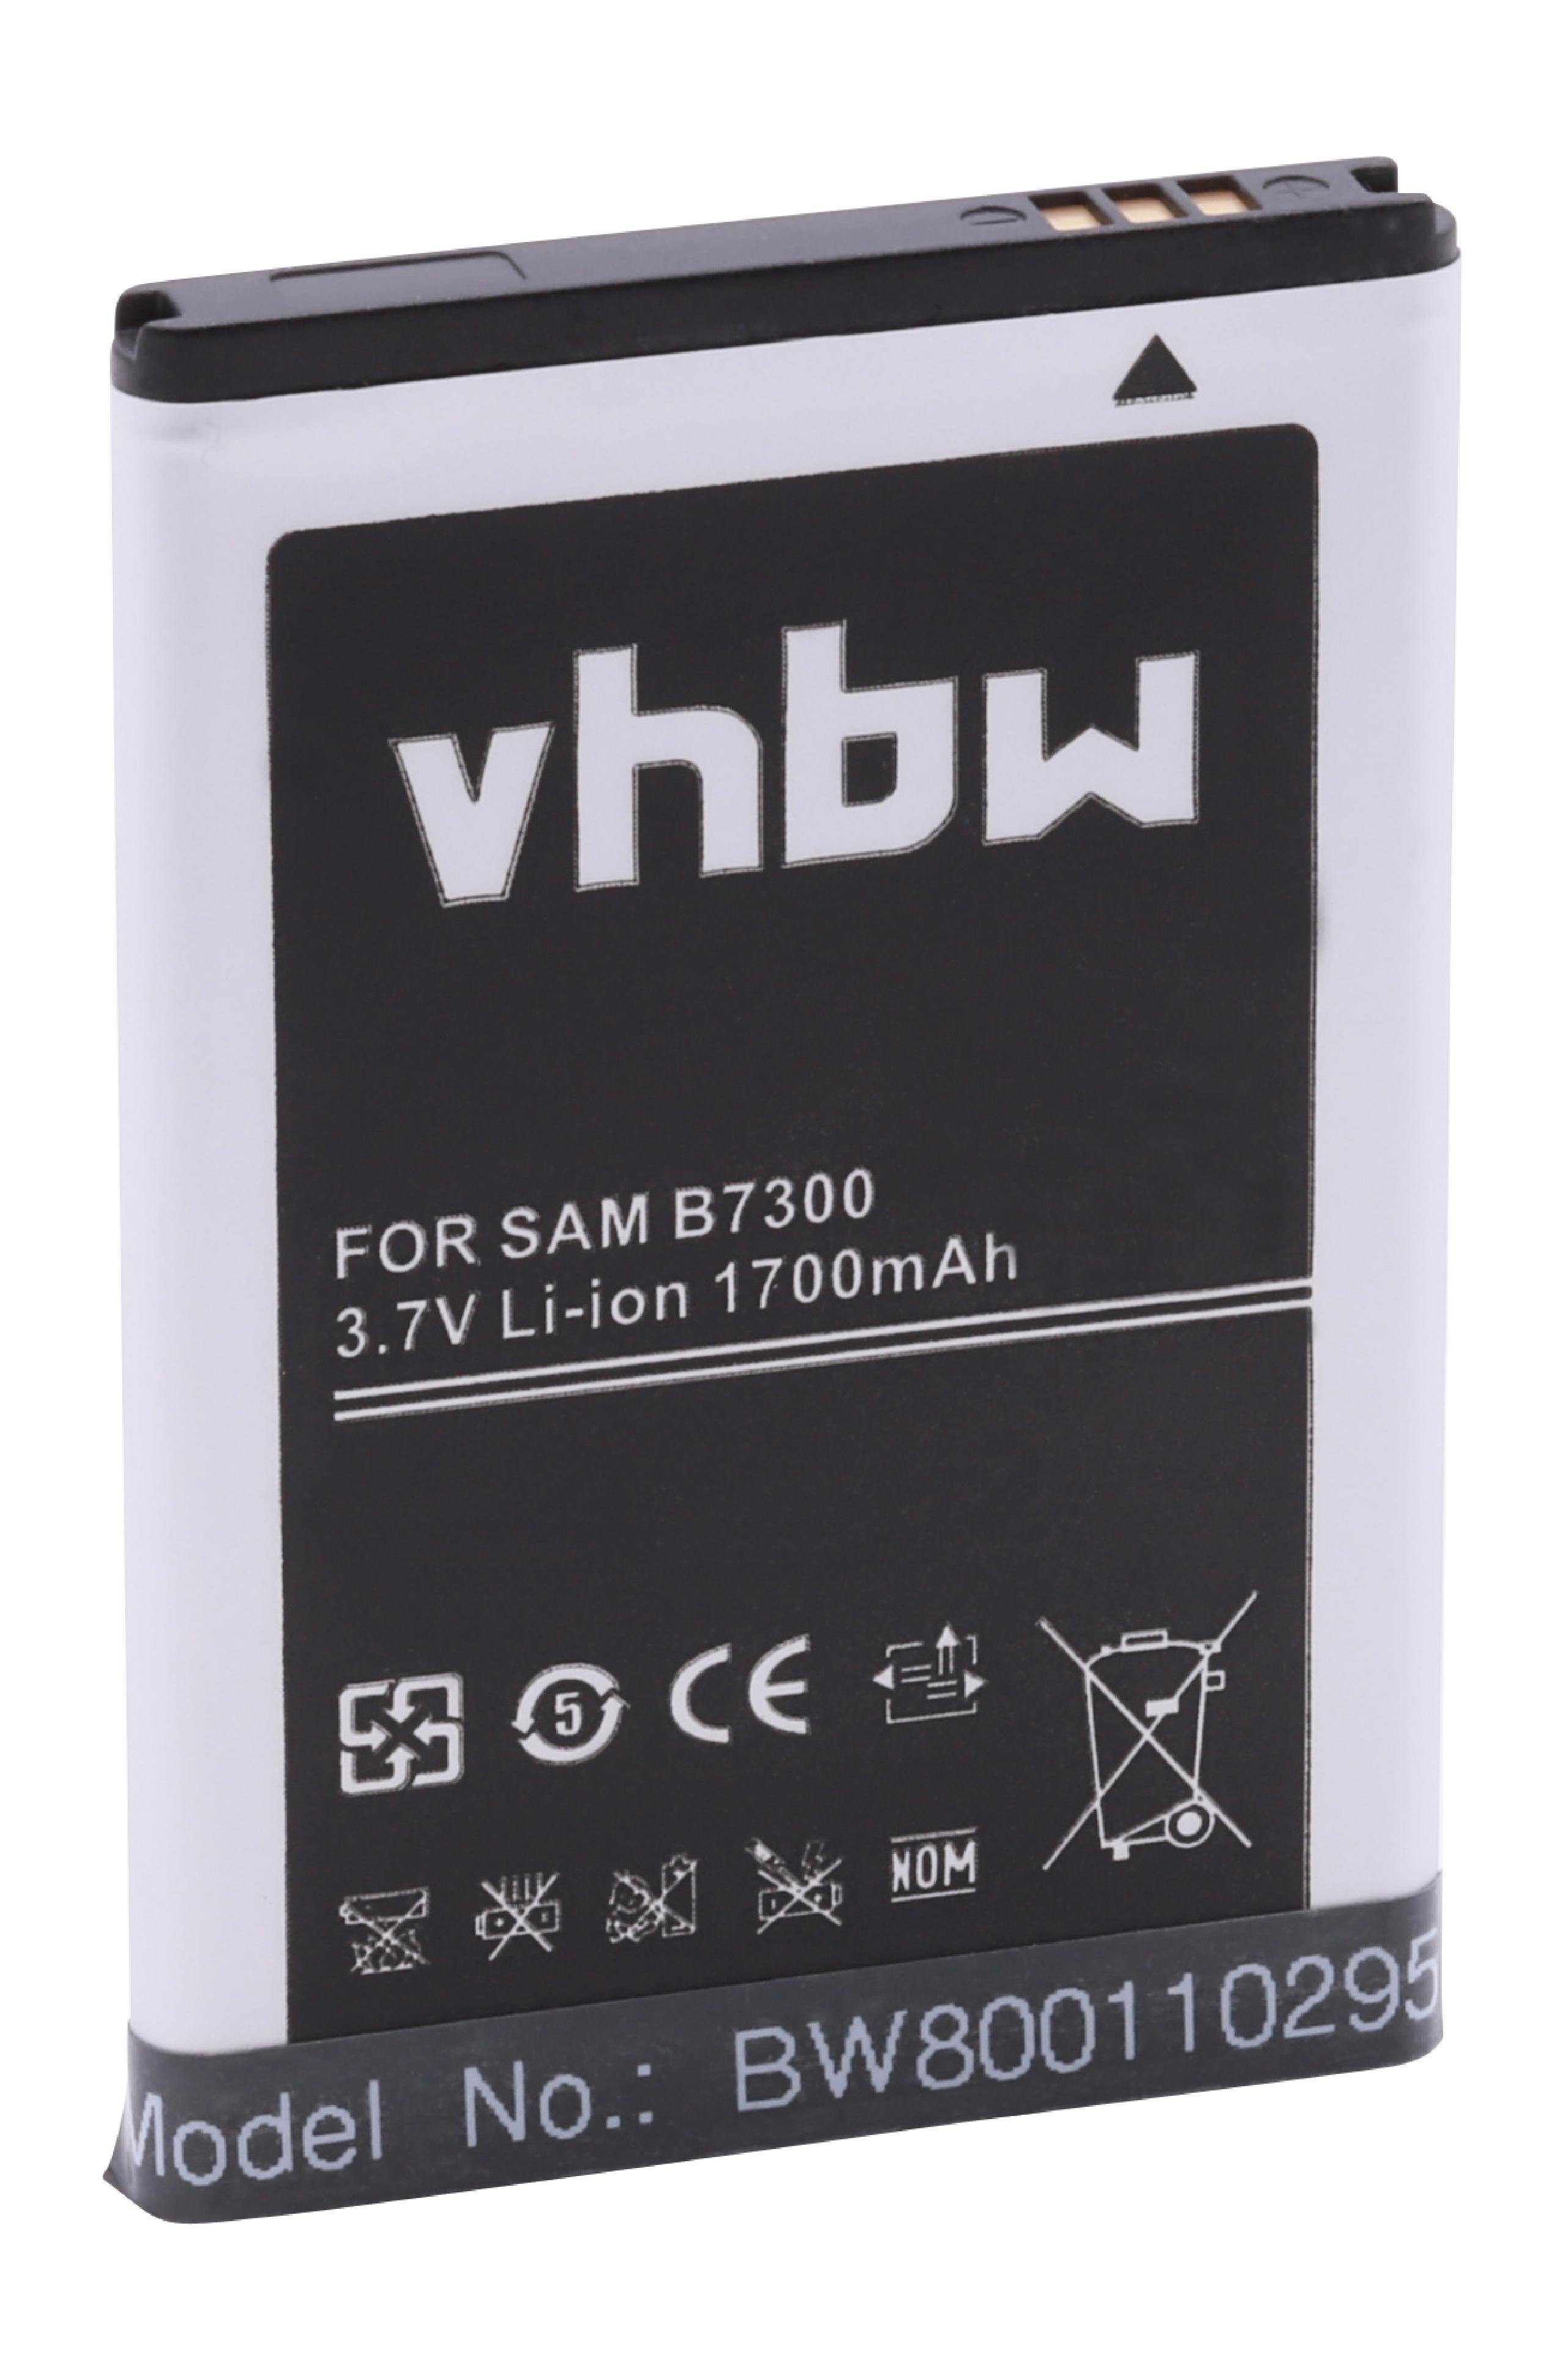 vhbw Smartphone-Akku passend für Kompatibel mit Samsung SGH-T839 T-MOBILE Sidekick 4G, SPH-G360, Sidekick 4G Mobilfunk (1700mAh, 3,7V, Li-Ion) 1700 mAh